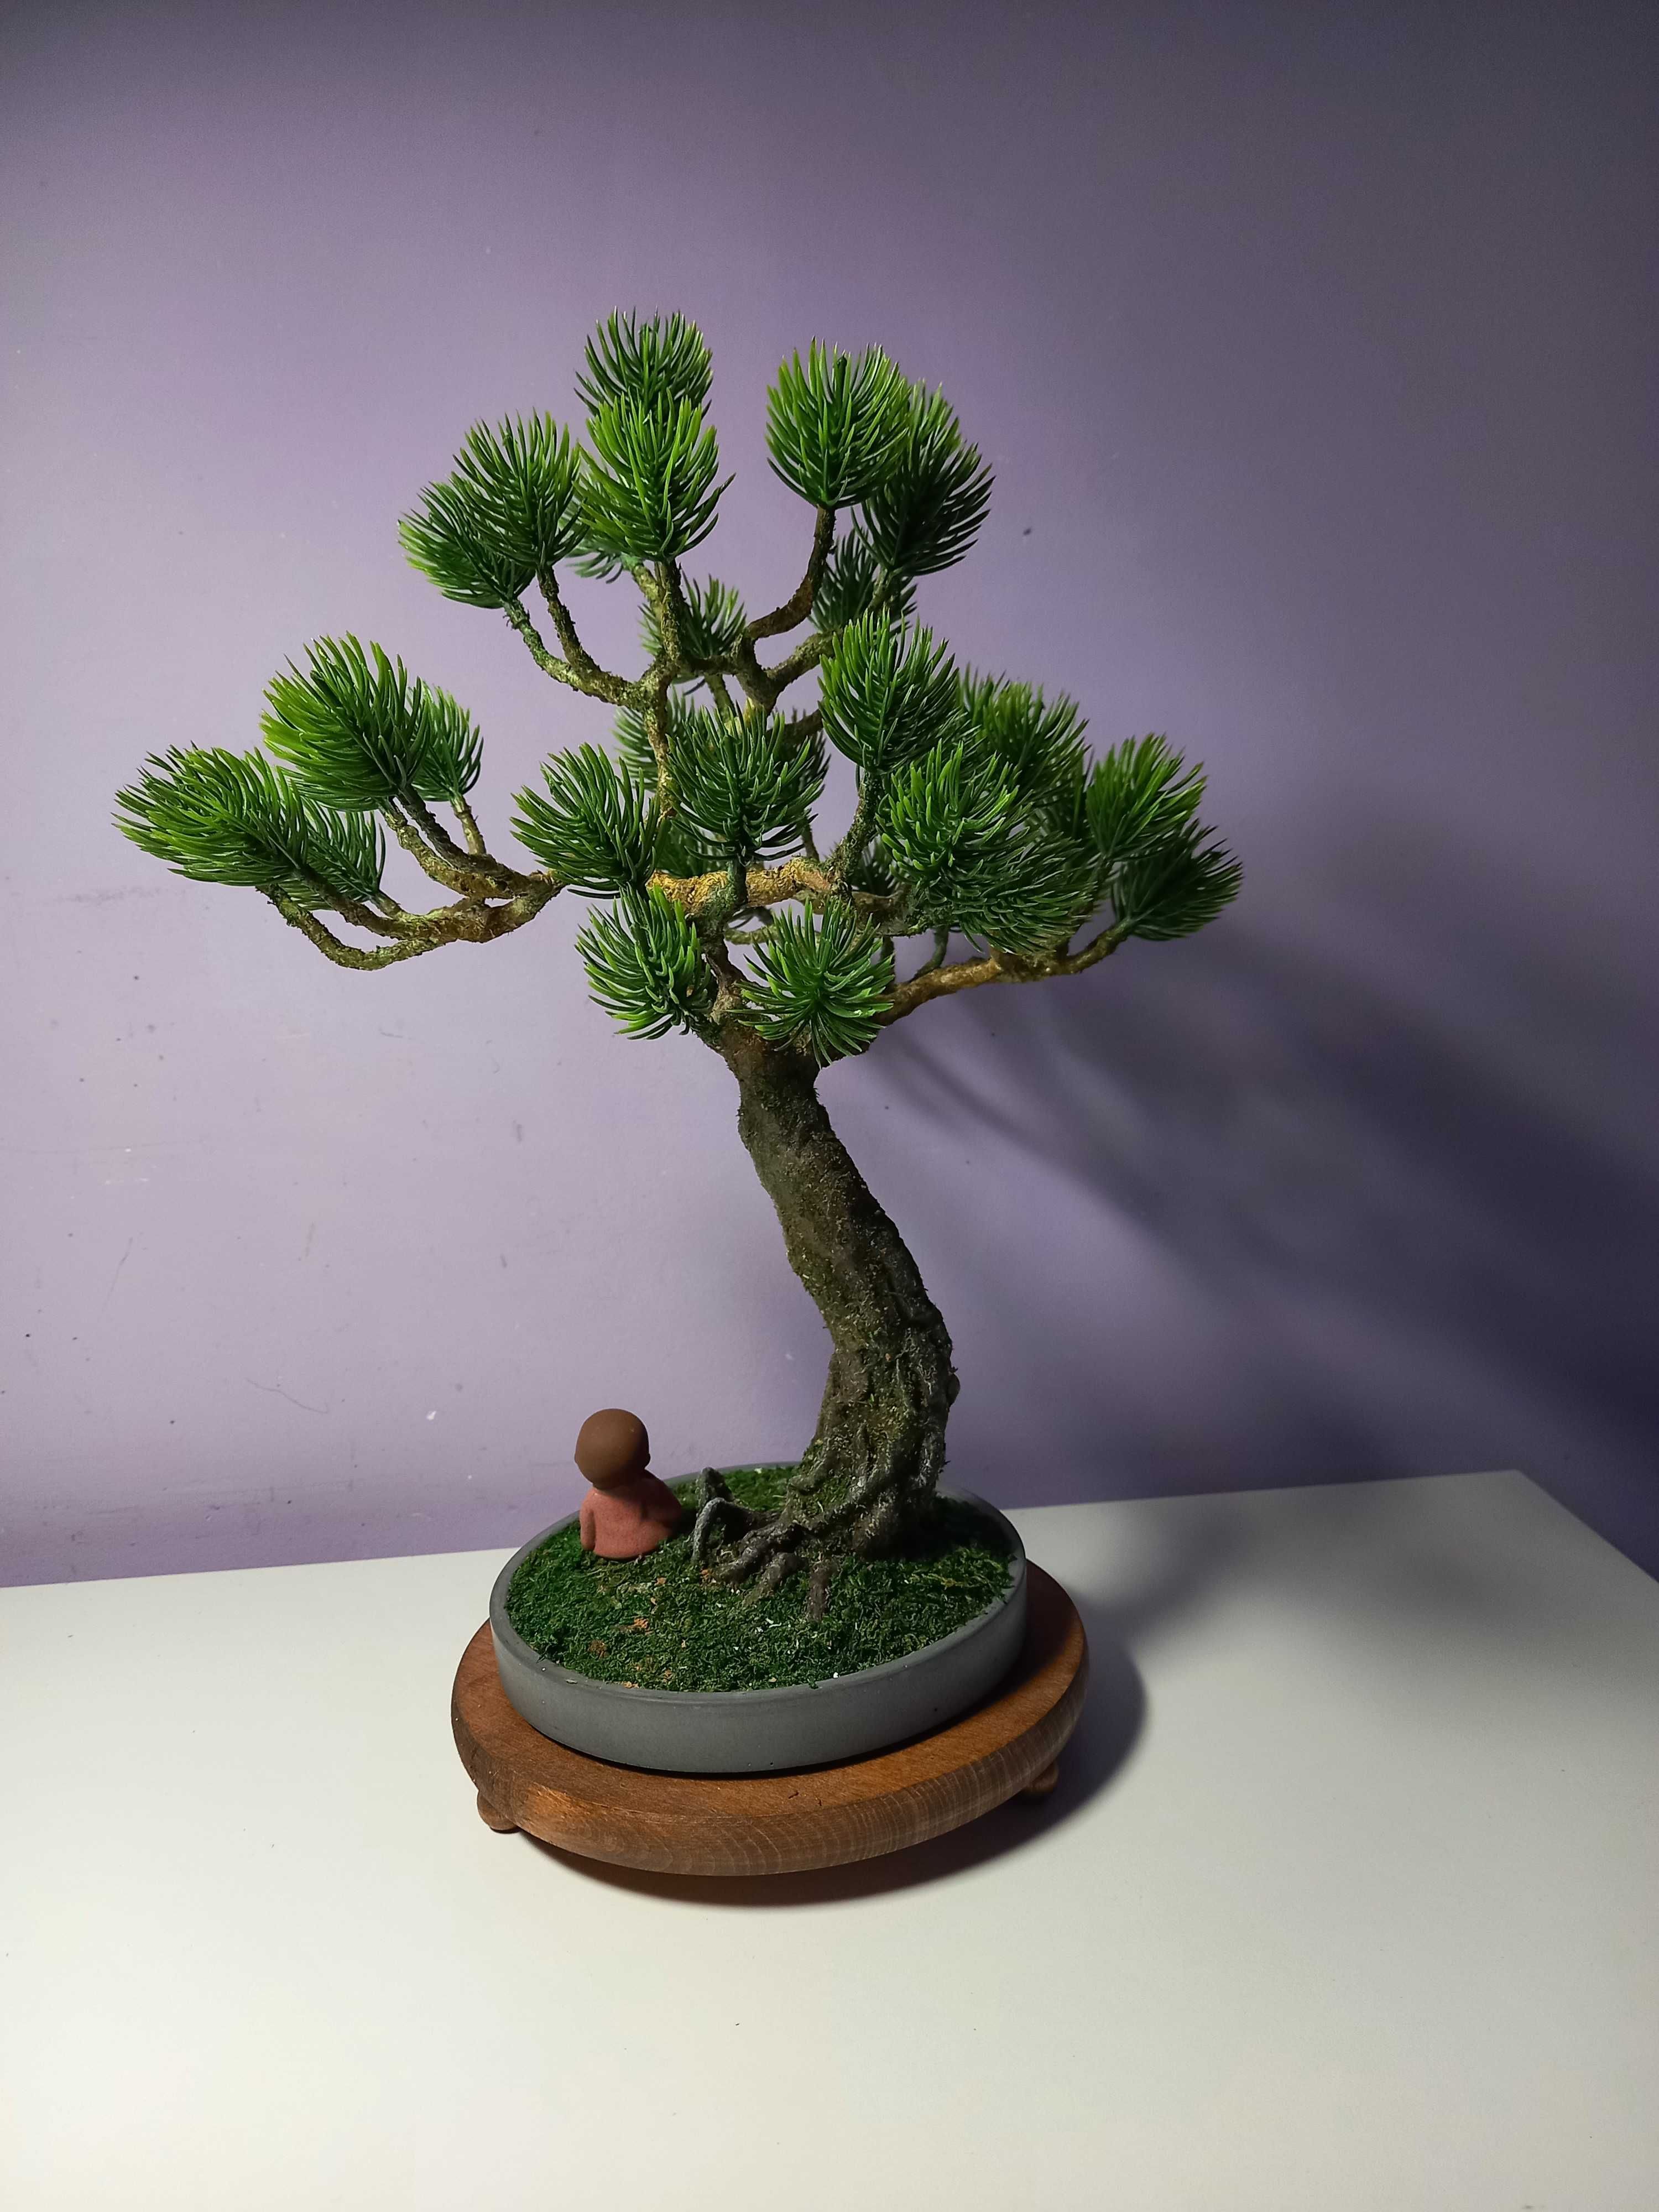 Sztuczne drzewko. Imitacja bonsai.